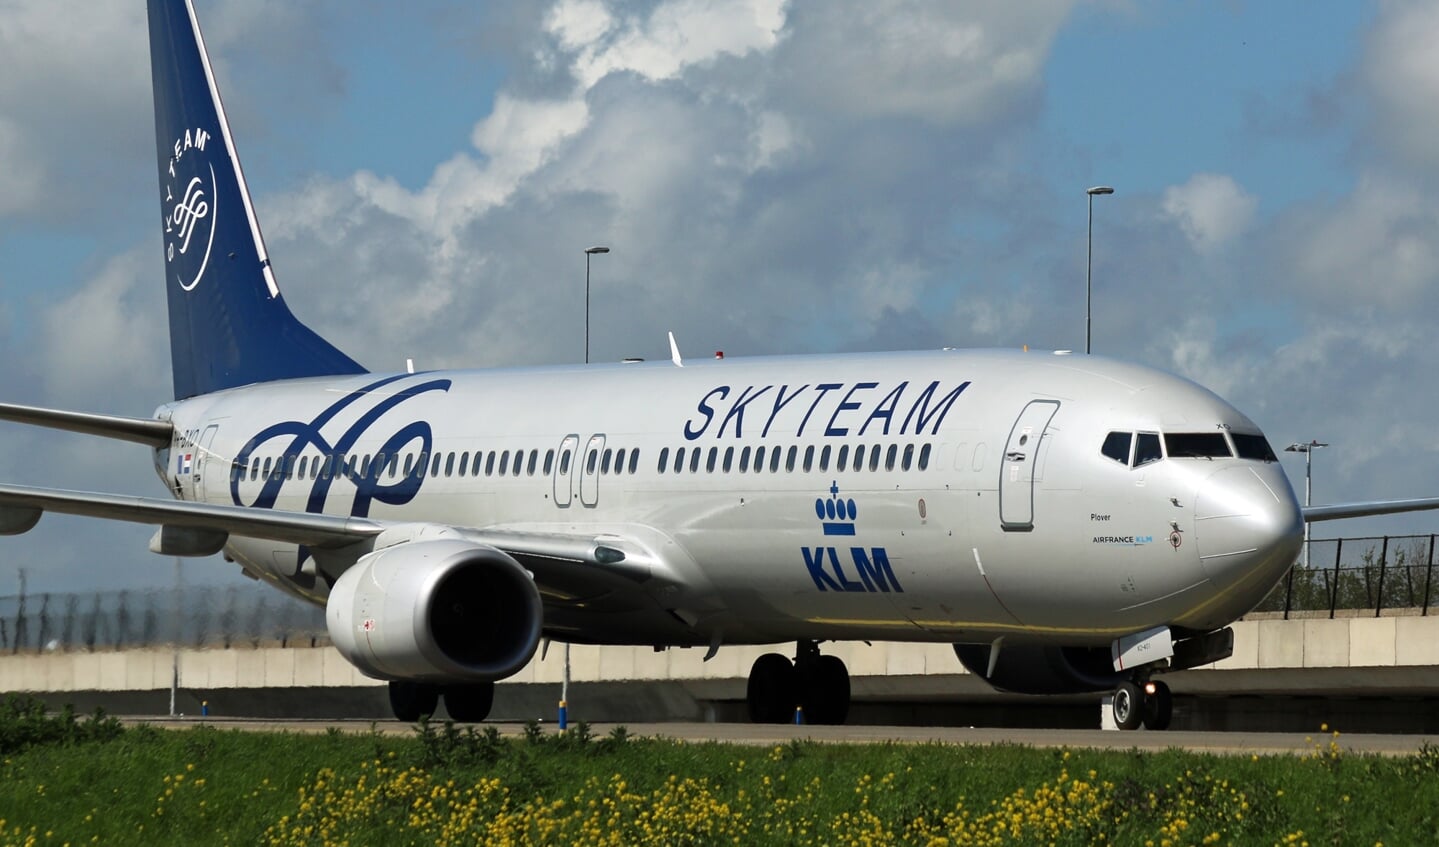 KLM is lid van Skyteam en deze Boeing 737 heeft een speciale Skyteam beschildering.